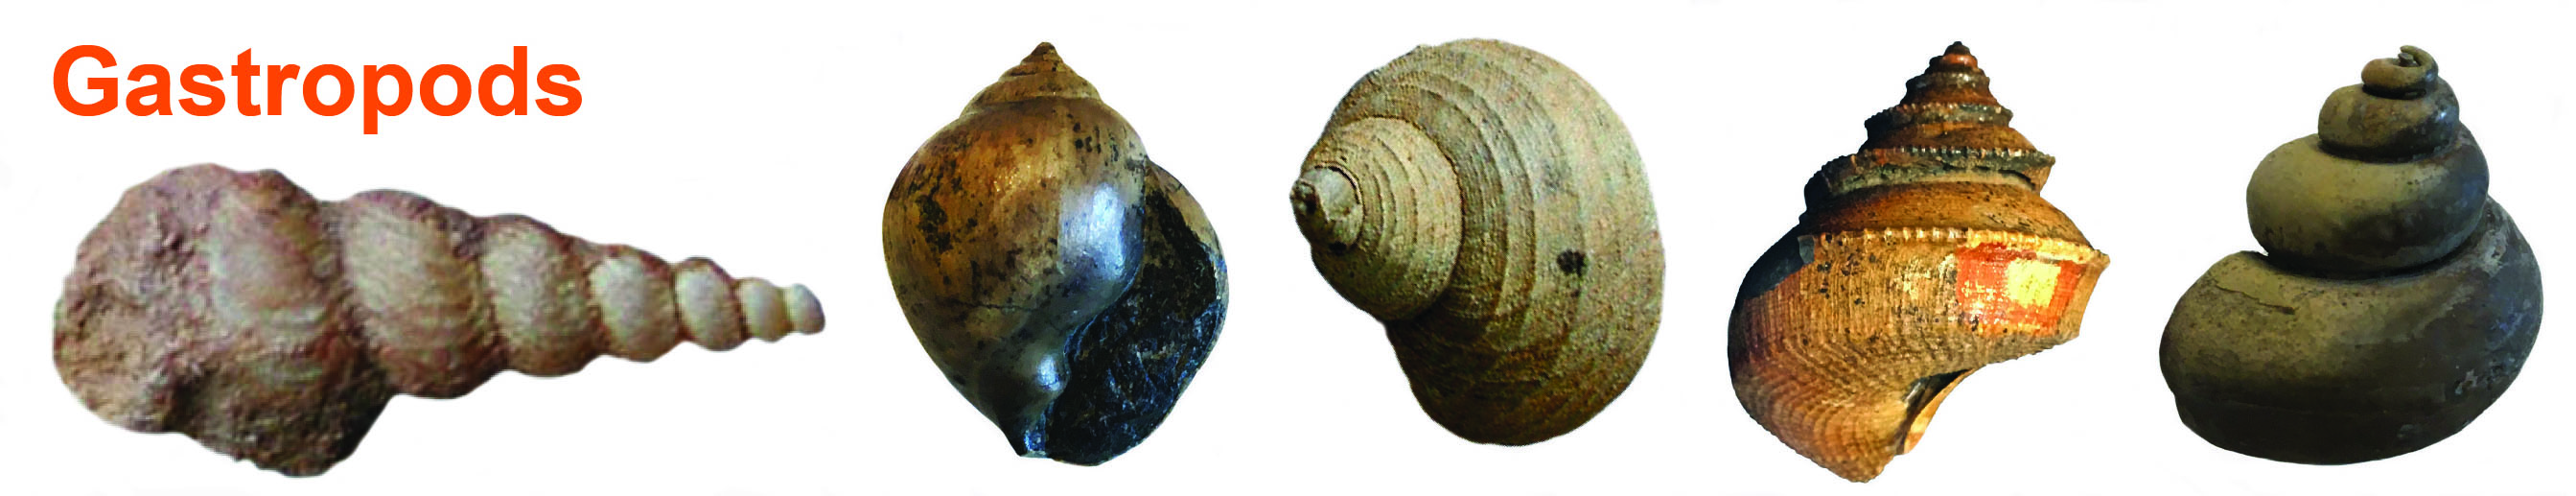 Gastropoda (snails) 